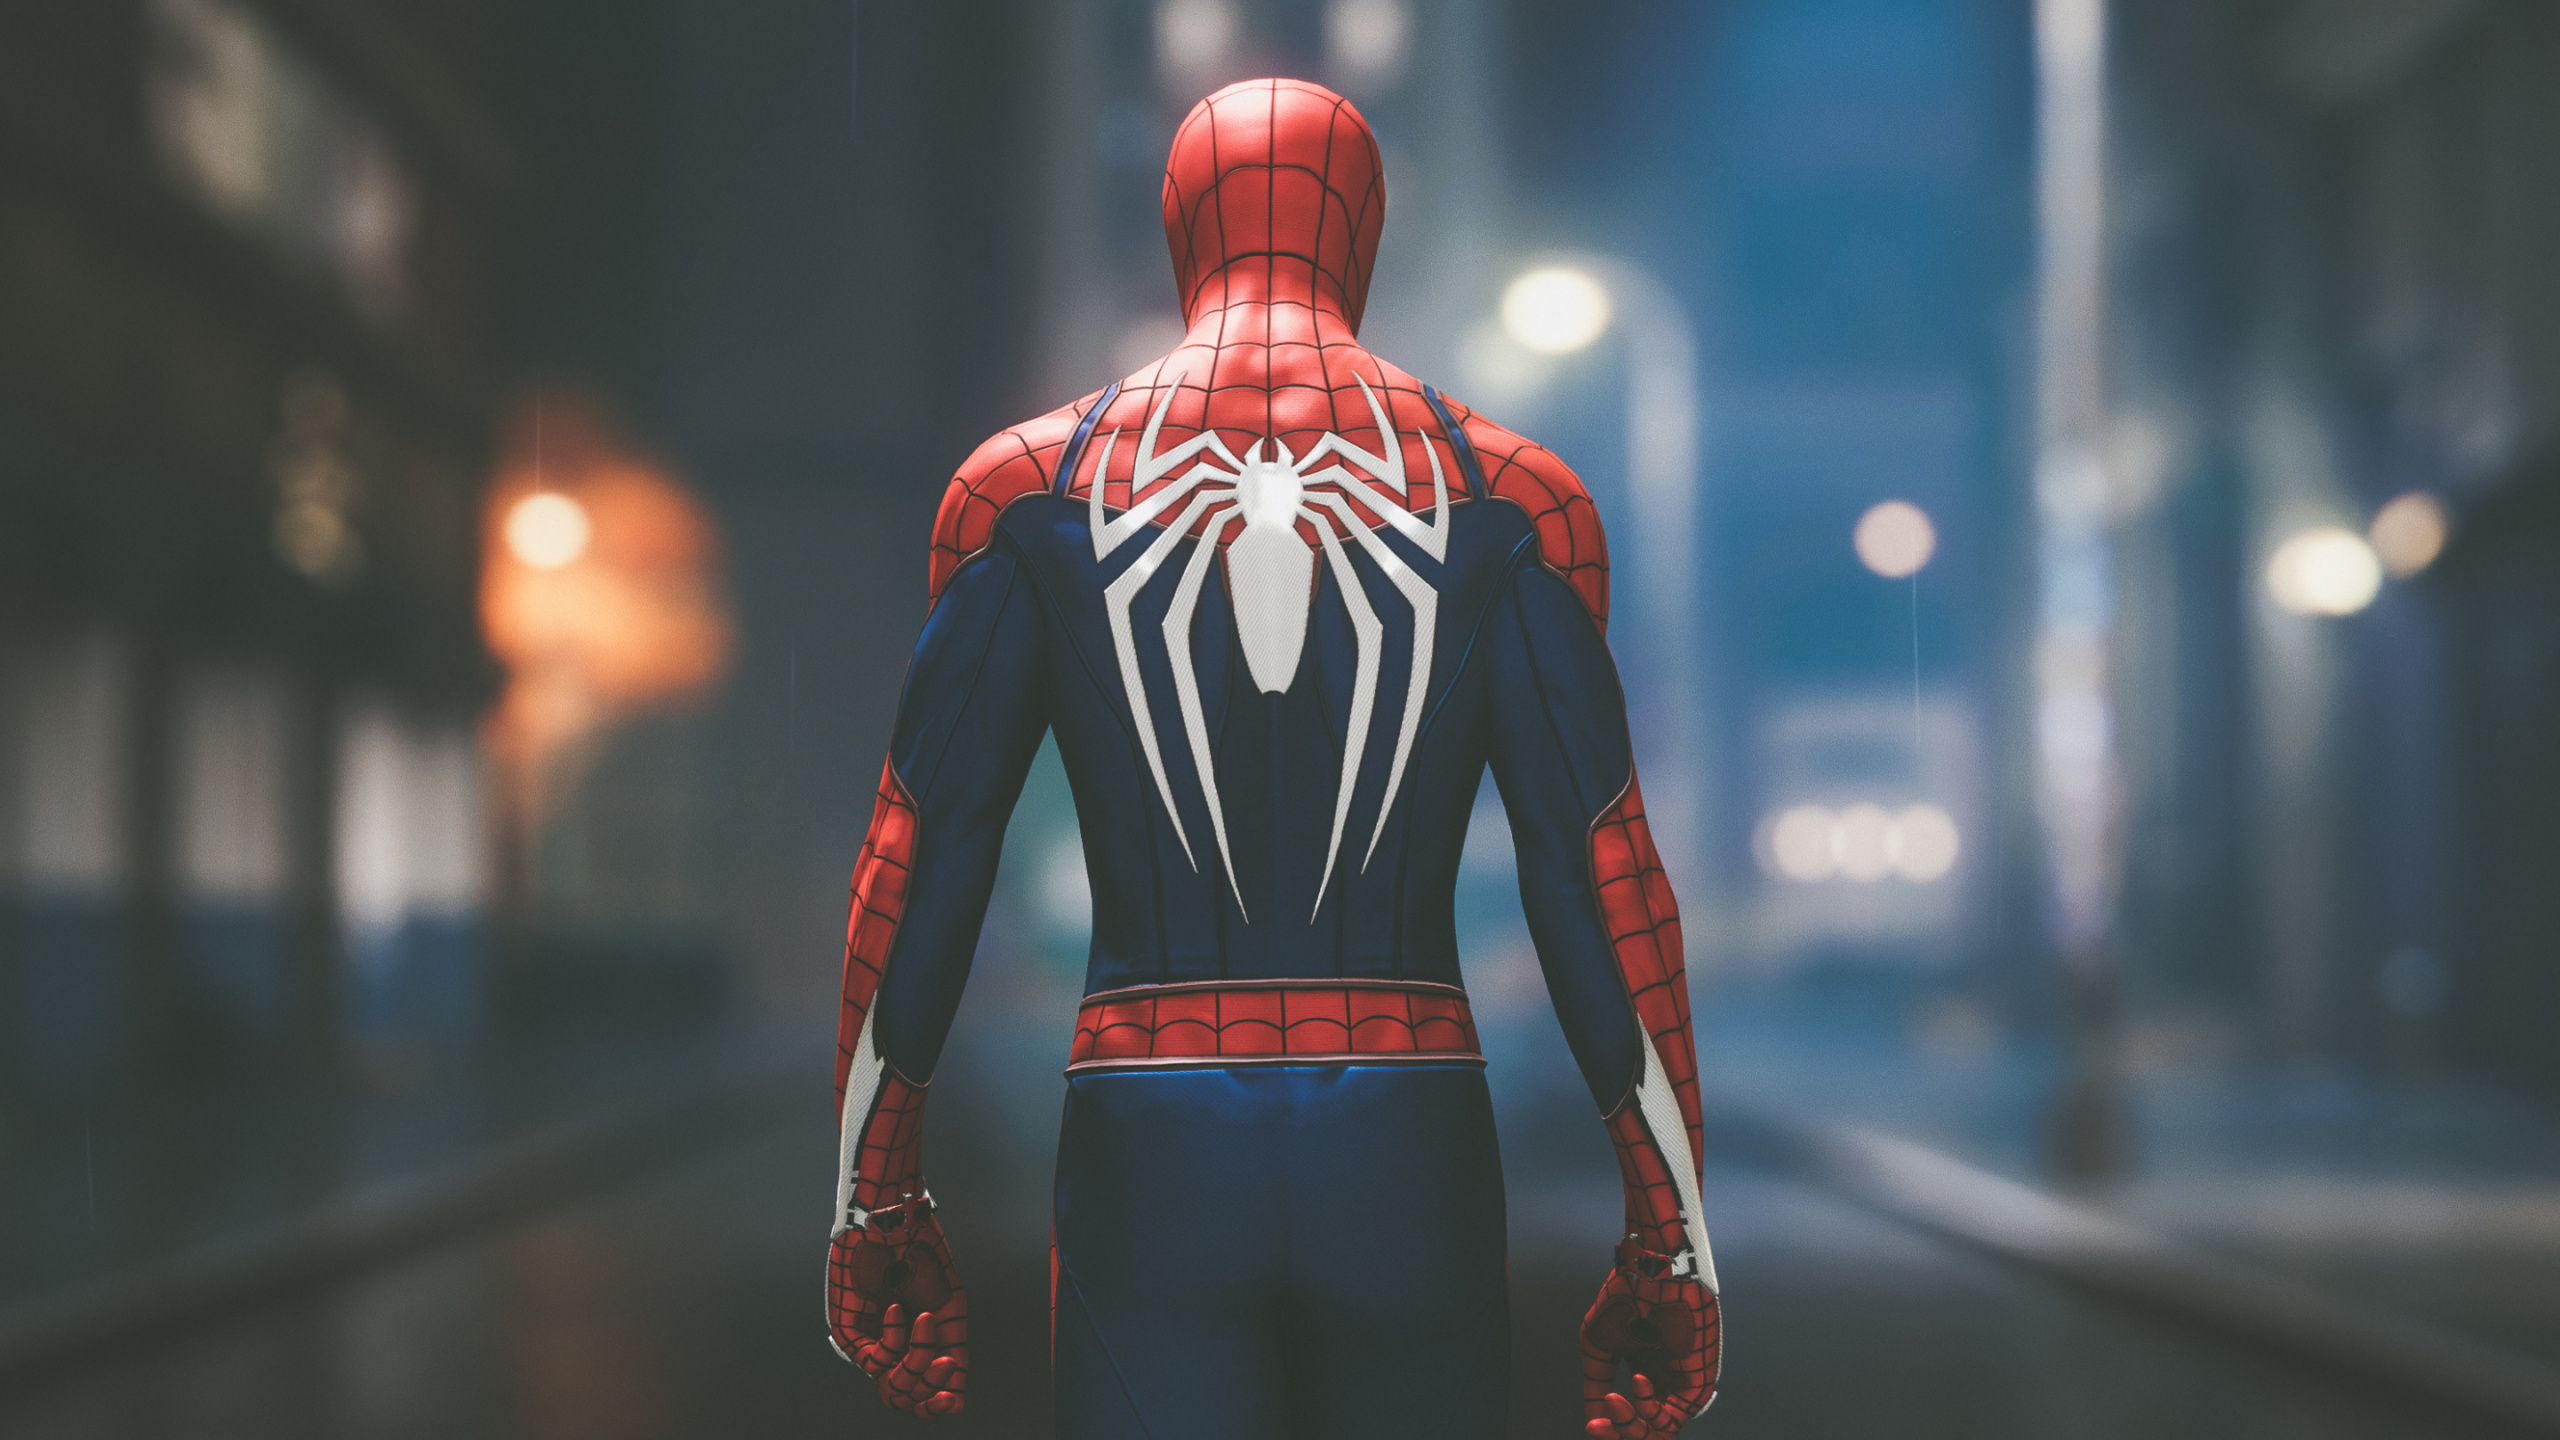 Spider-man, Superhéroe, Figura de Acción, Playstation 4, Personaje de Ficción. Wallpaper in 2560x1440 Resolution